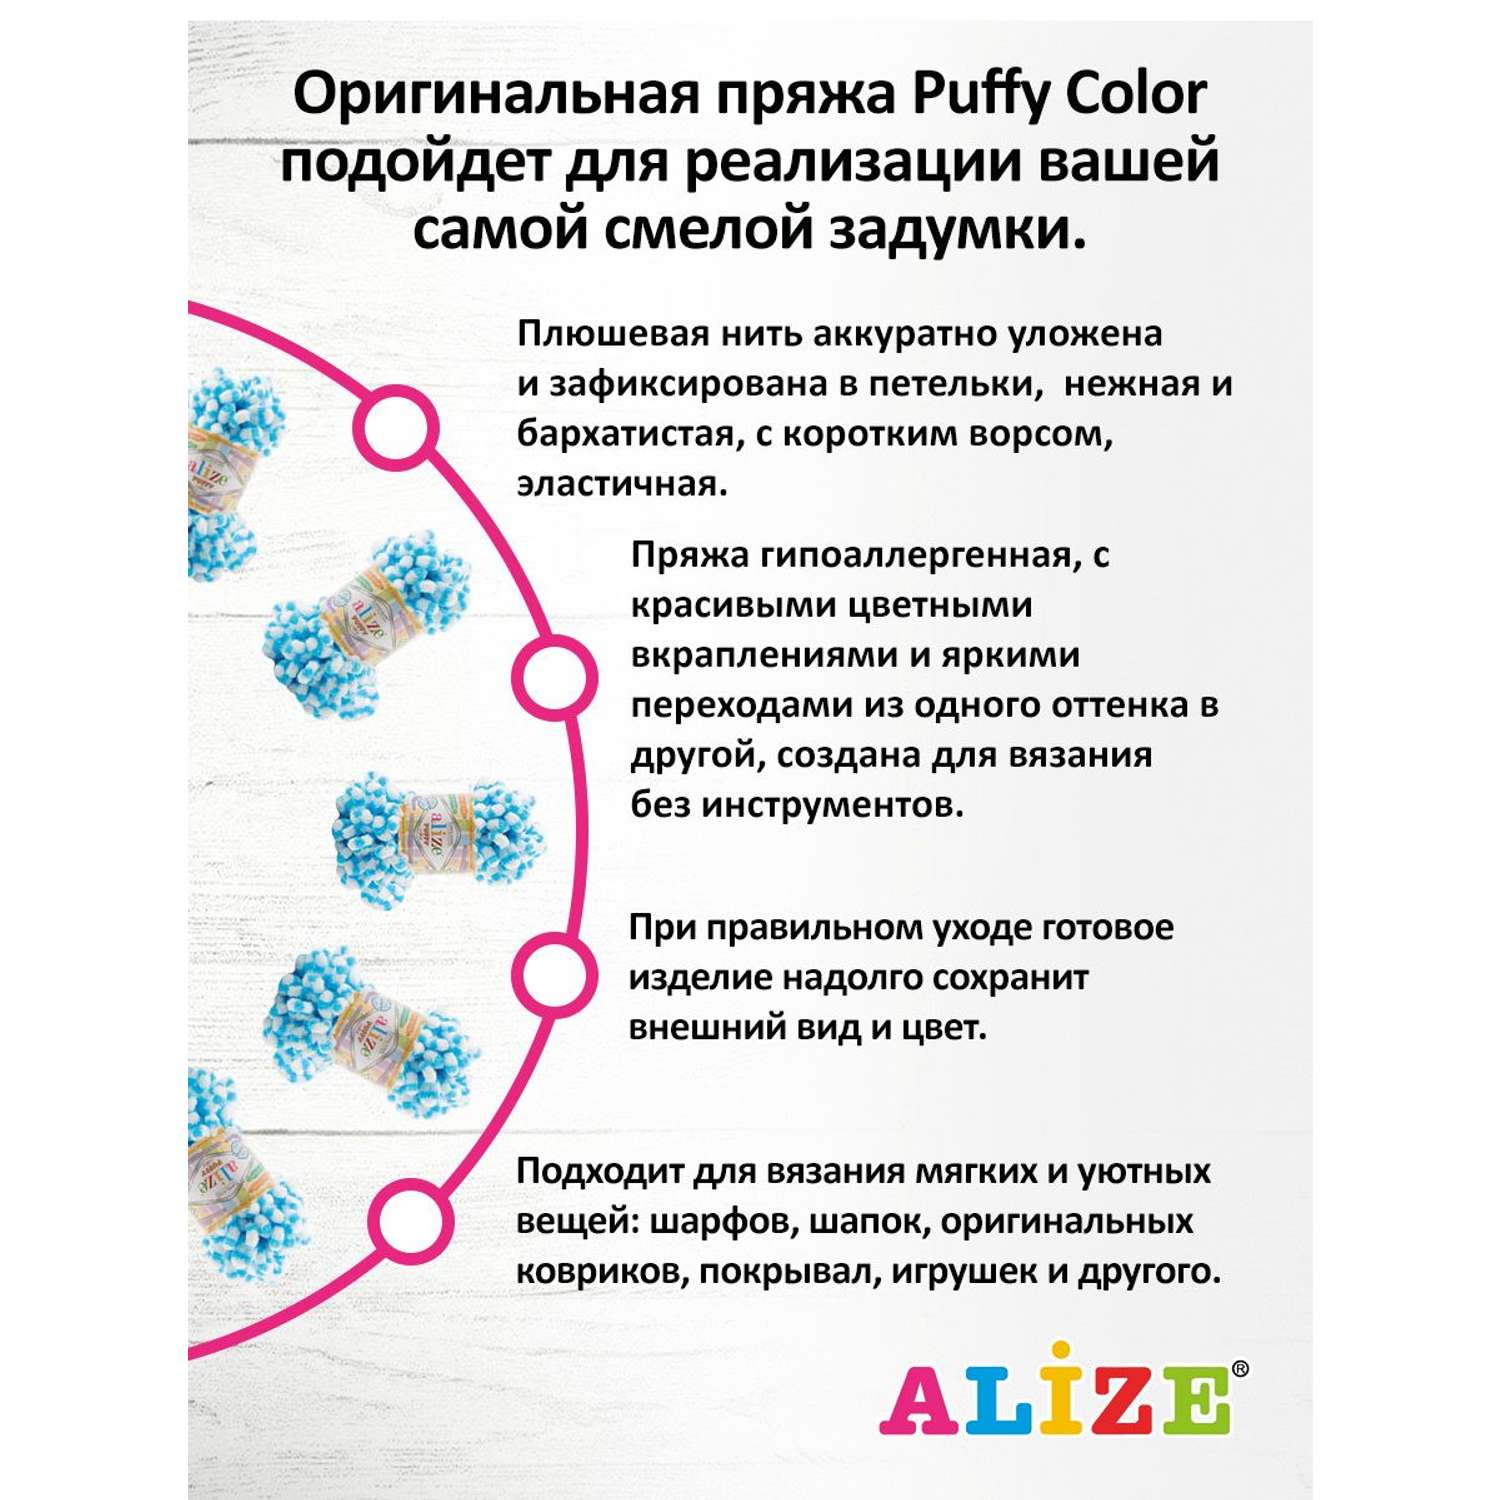 Пряжа Alize фантазийная для вязания игрушек Puffy Color 100 гр 9 м 5 мотков 6459 секционный - фото 4